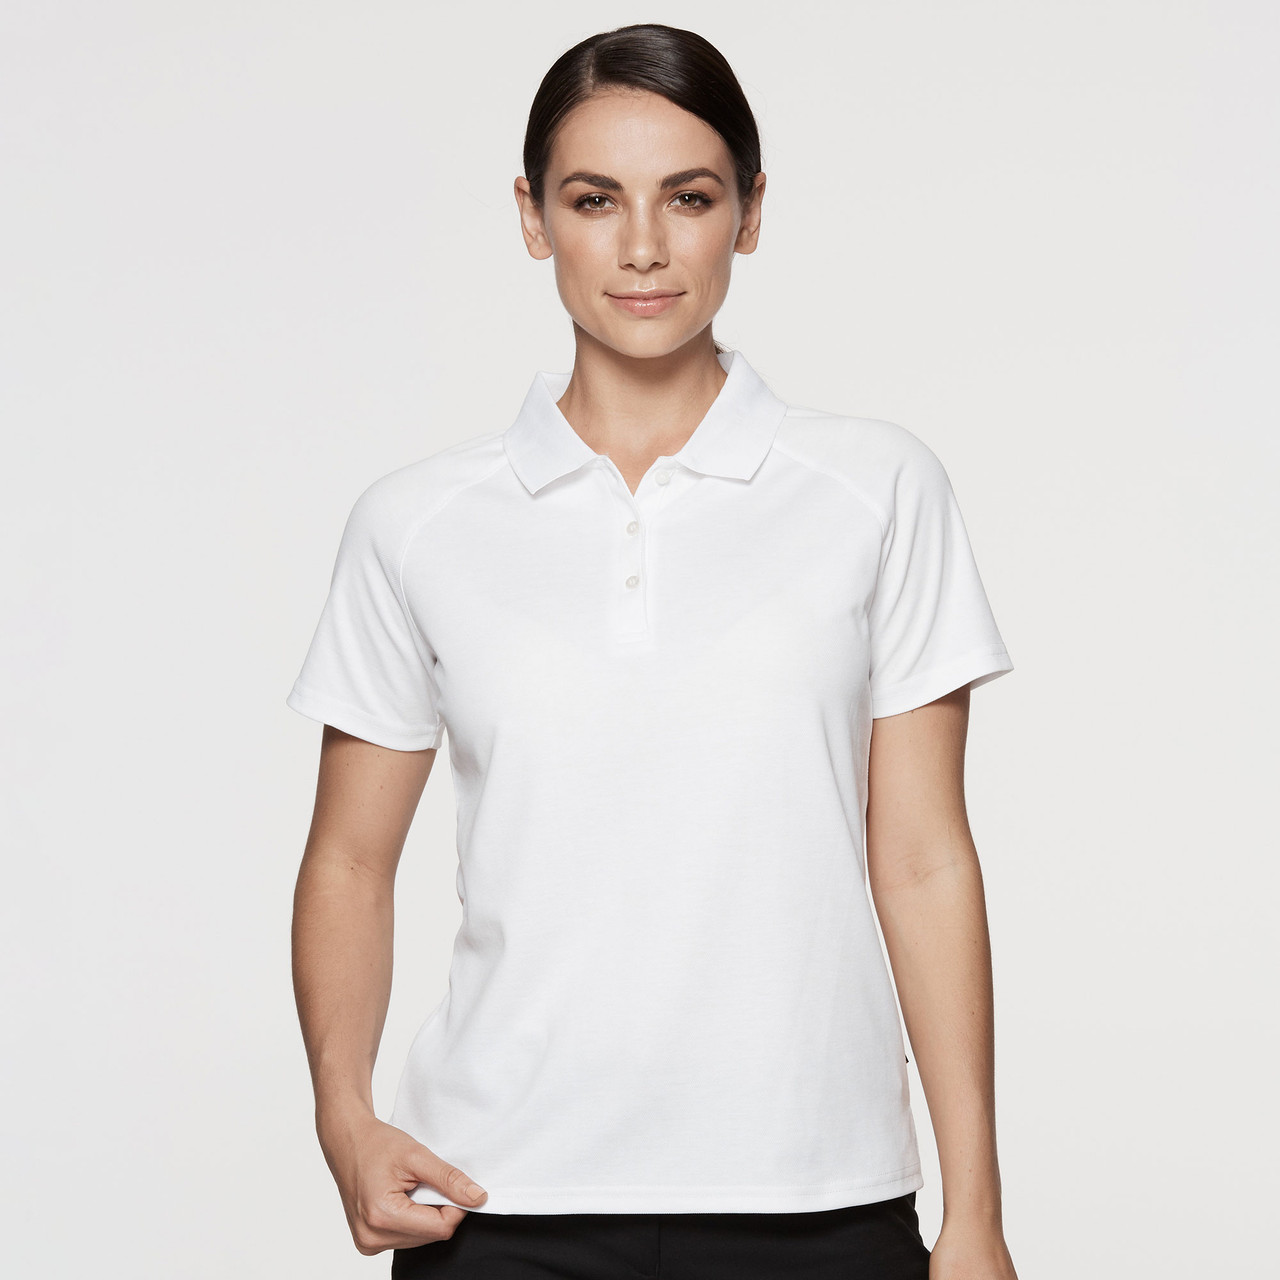 Ladies DriWear Poly Cotton Polo Shirts 